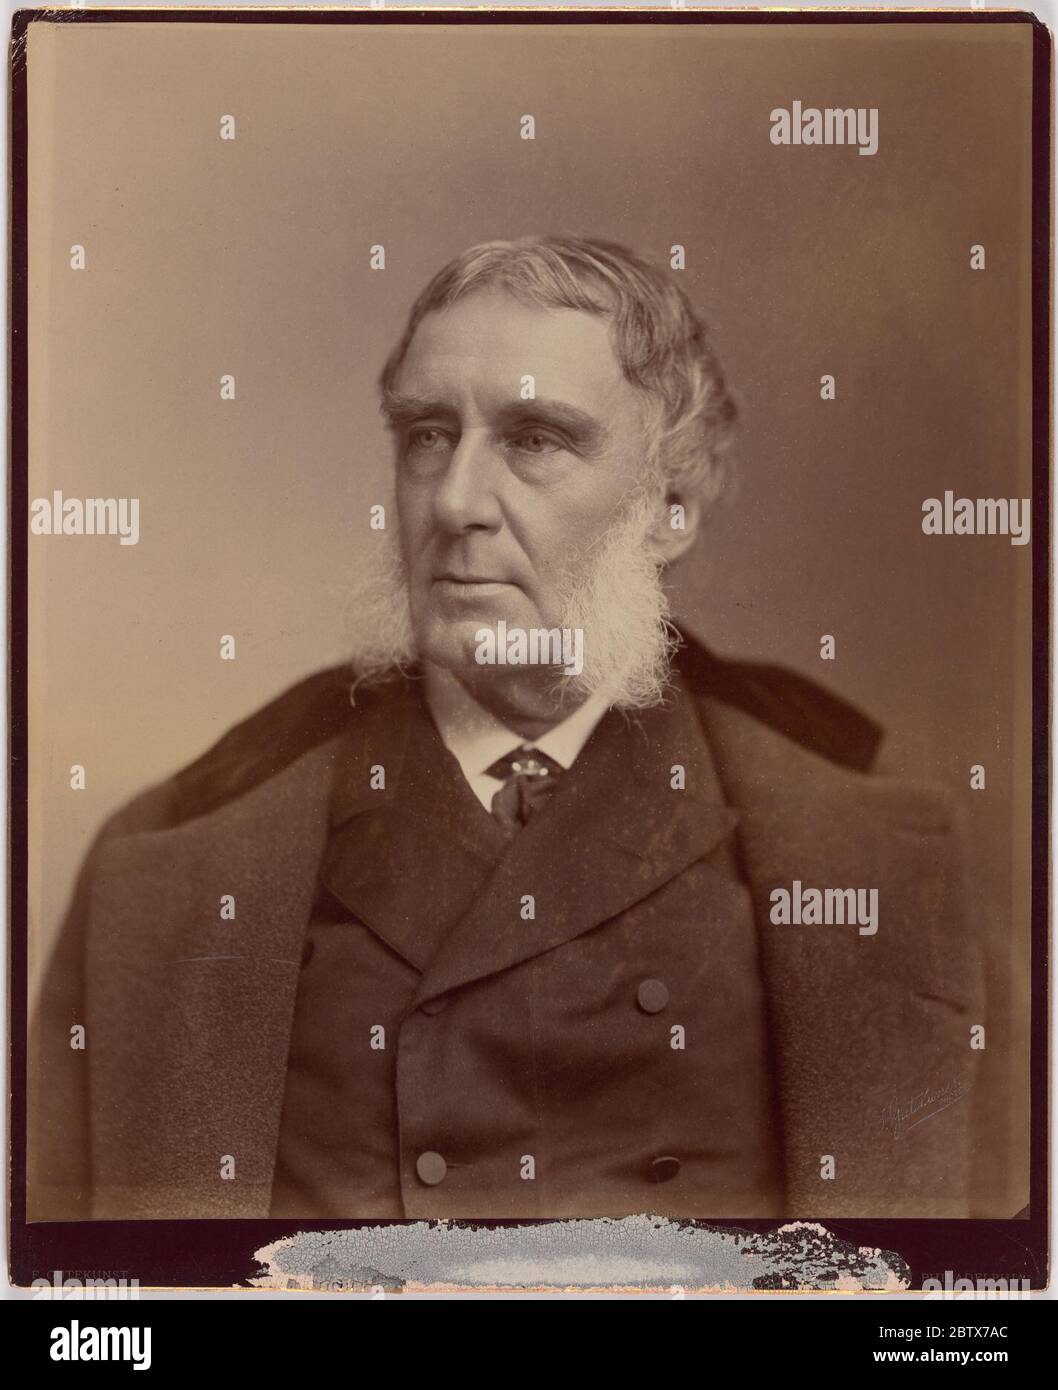 George William Curtis. Stock Photo